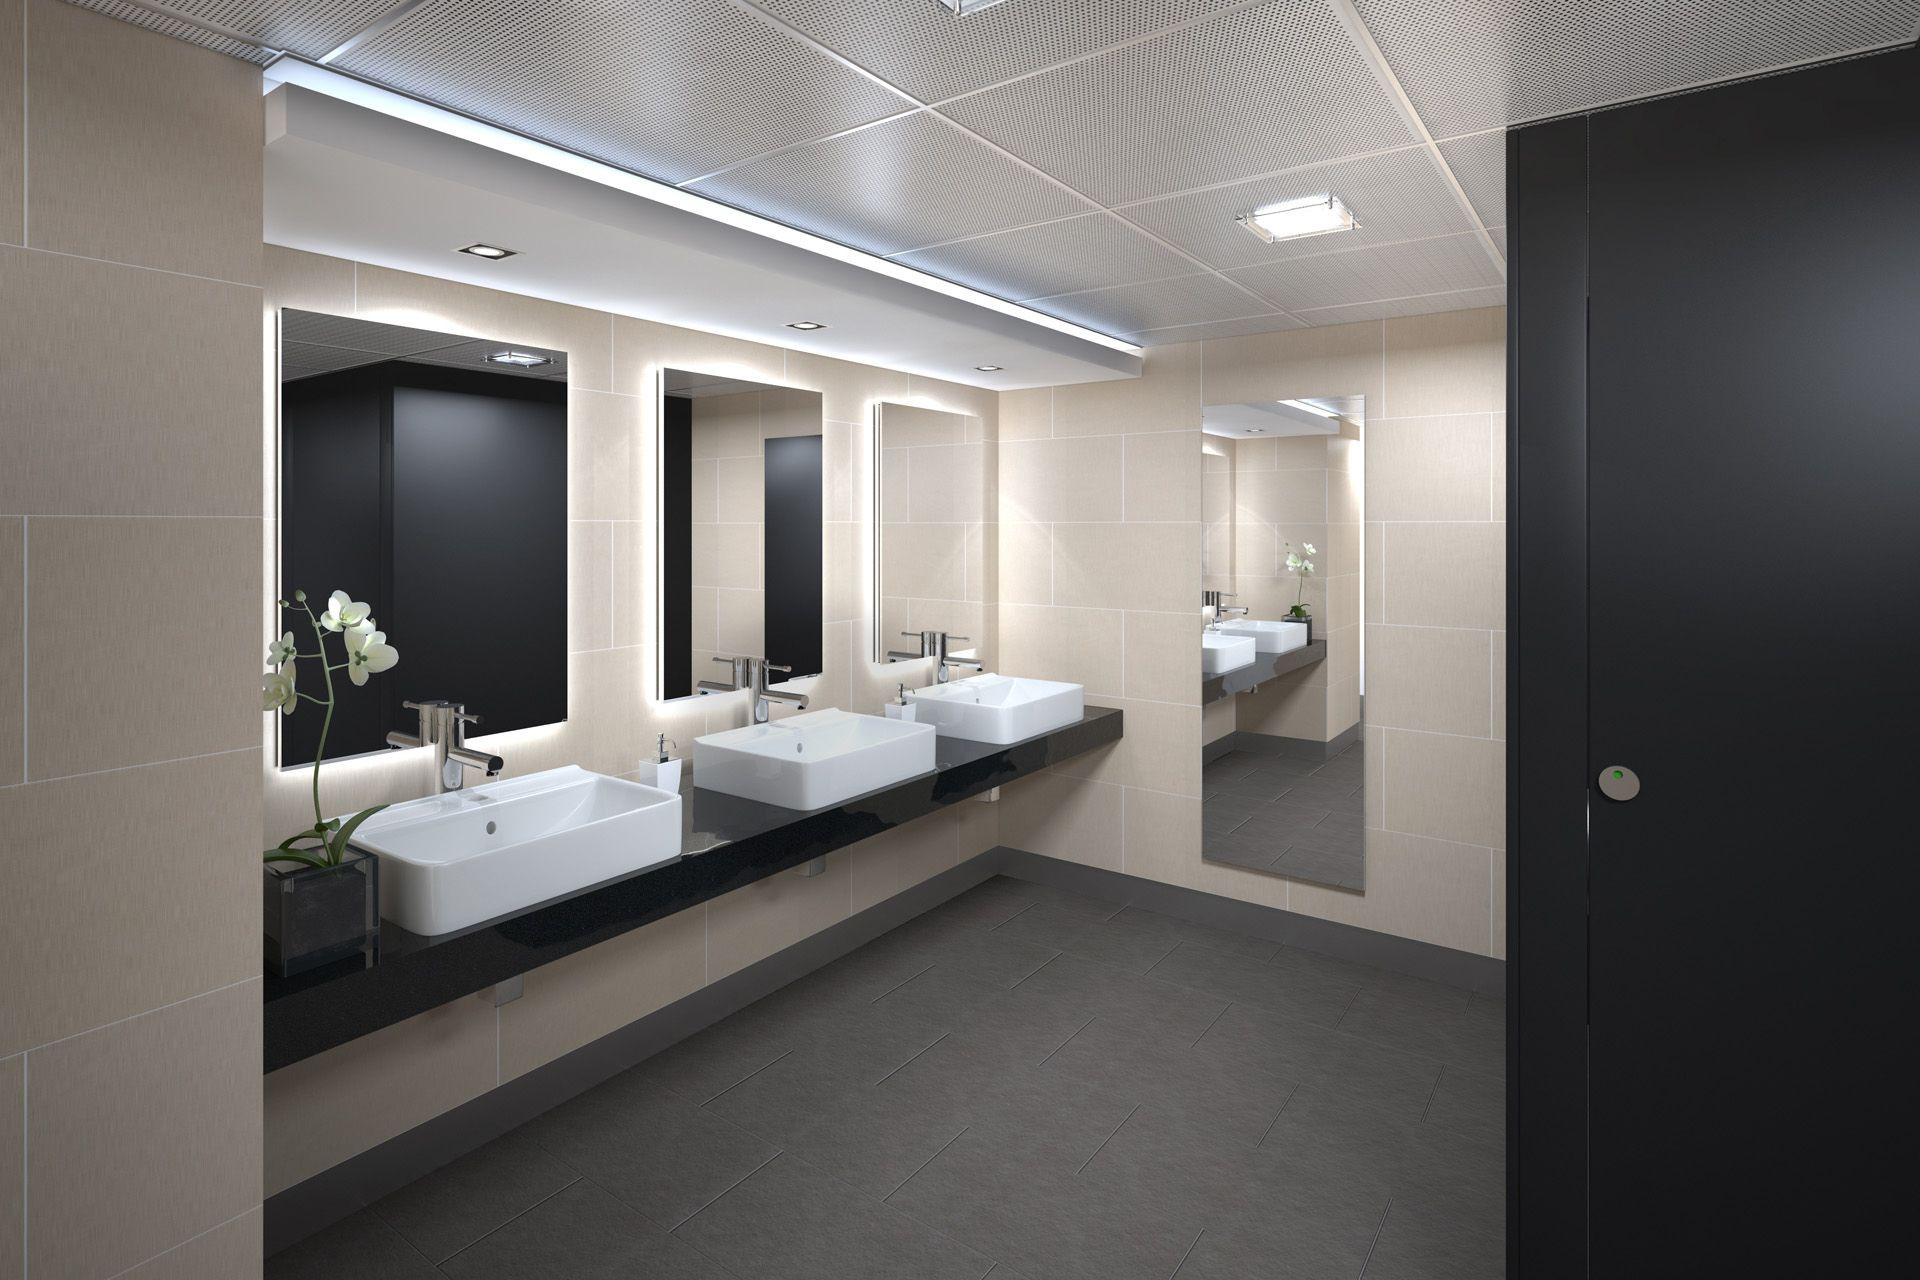 Commercial Bathroom Designs
 mercial bathroom ideas